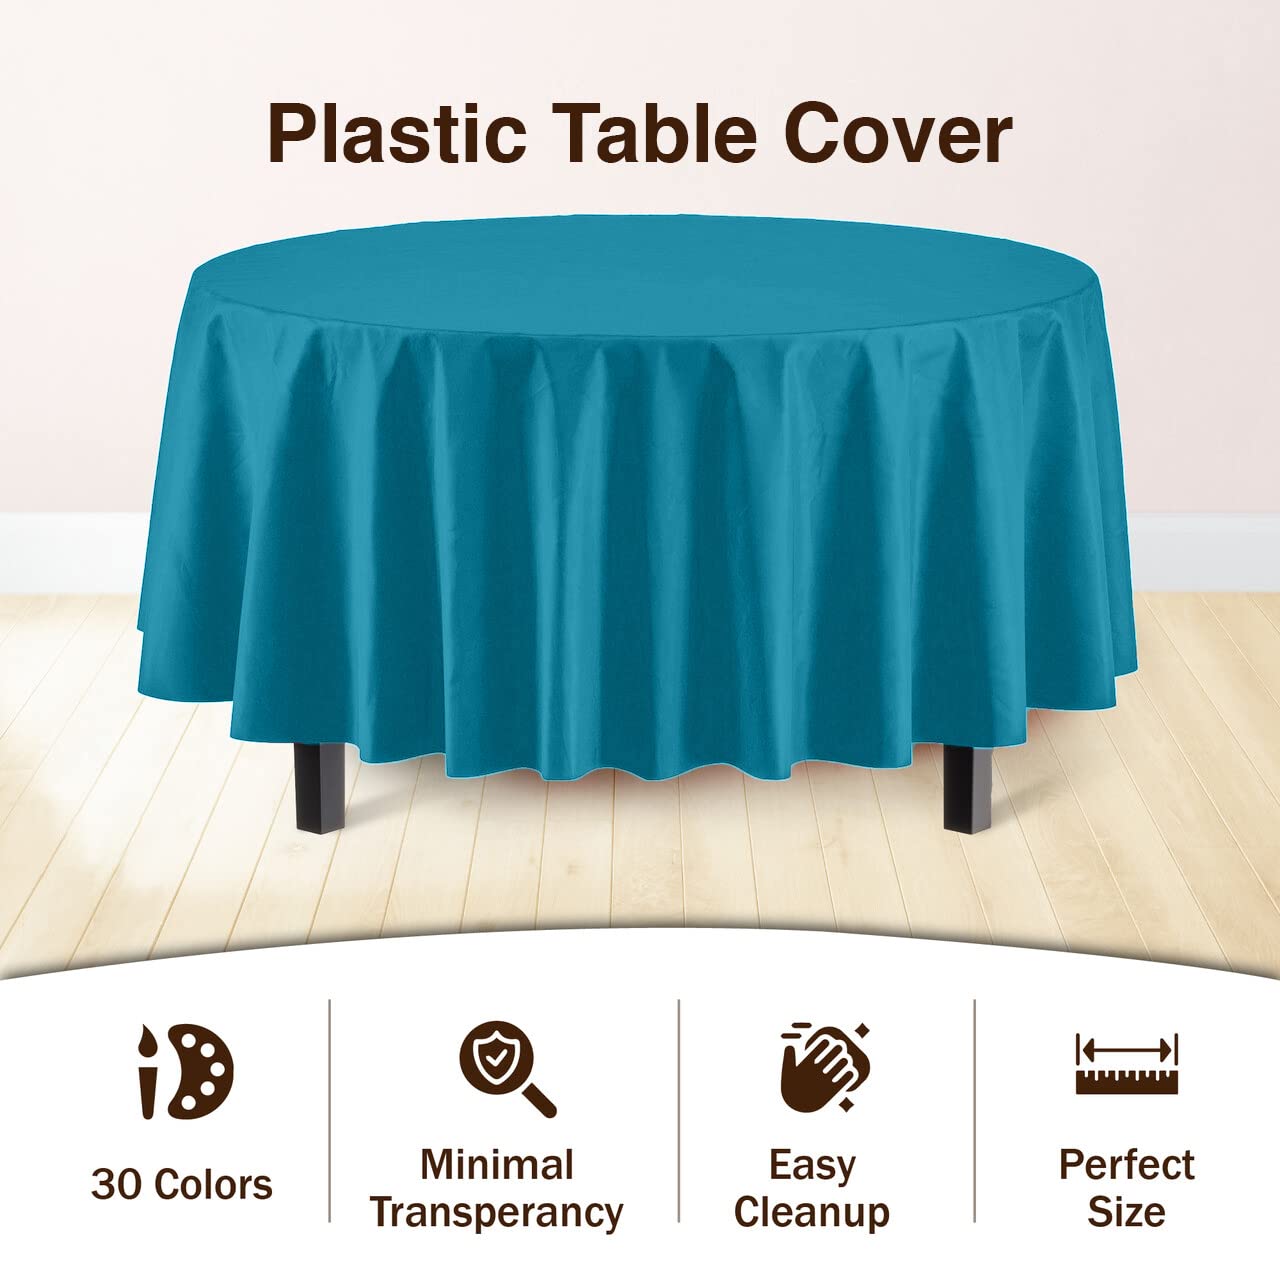 Premium Round Turquoise Table Cover